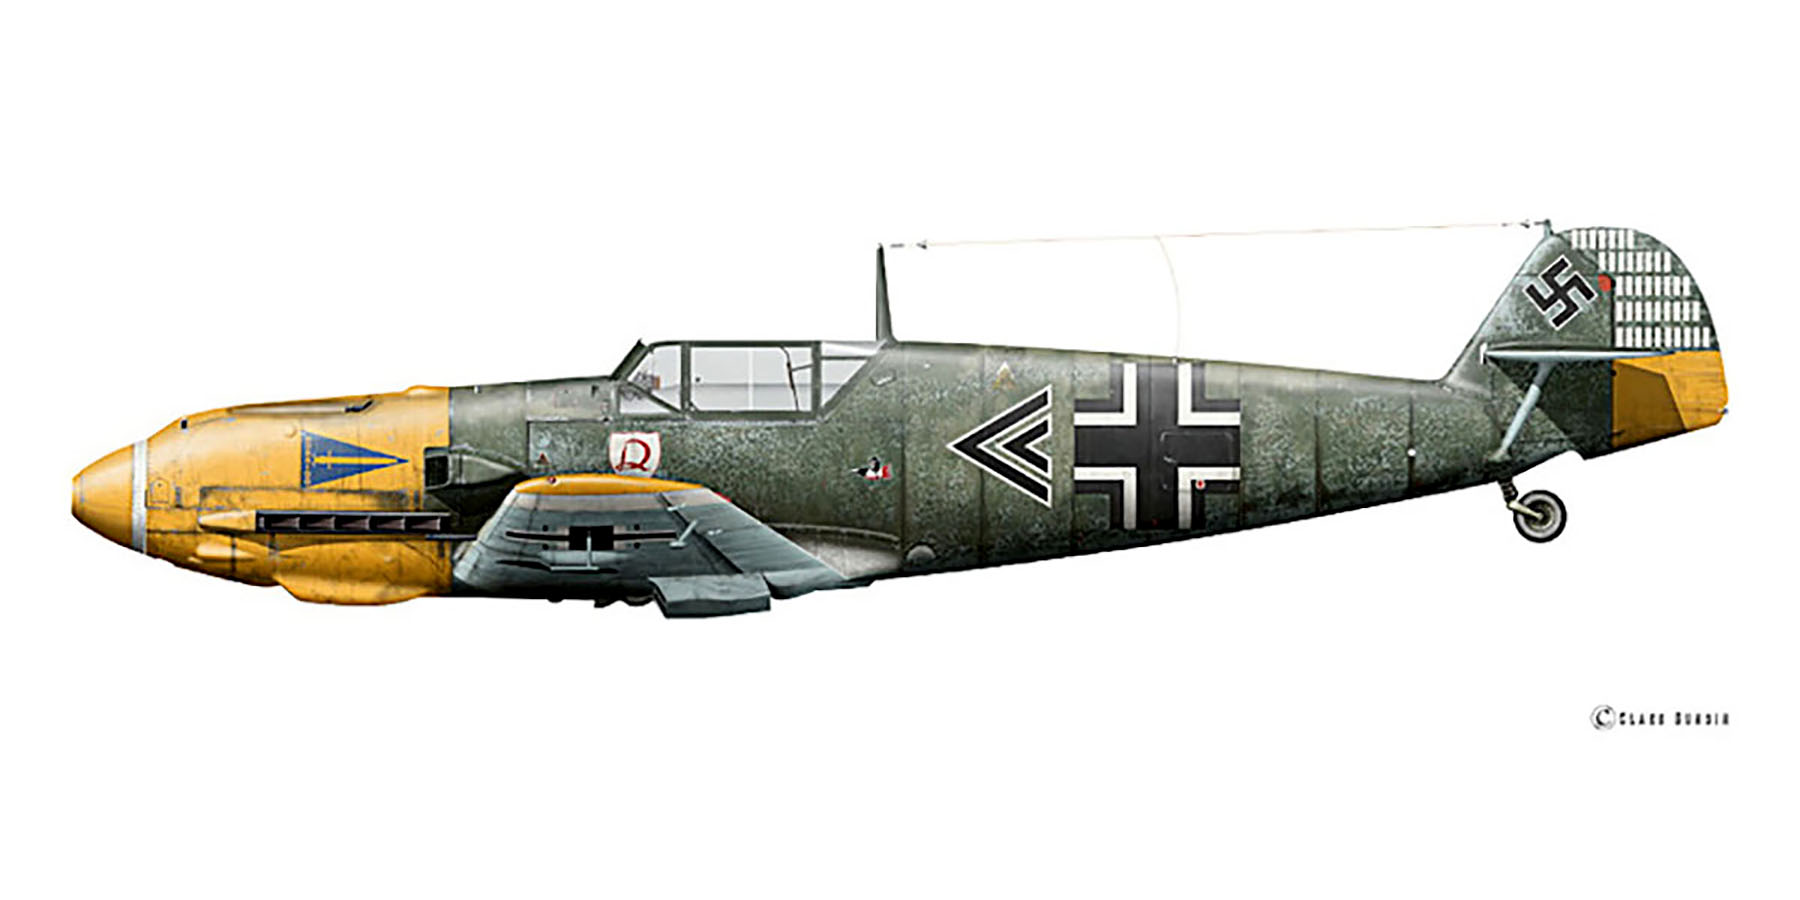 Messerschmitt Bf 109E4 Stab I.JG2 Helmut Wick WNr 5344 Mardyck Belgium 6th Oct 1940 0A